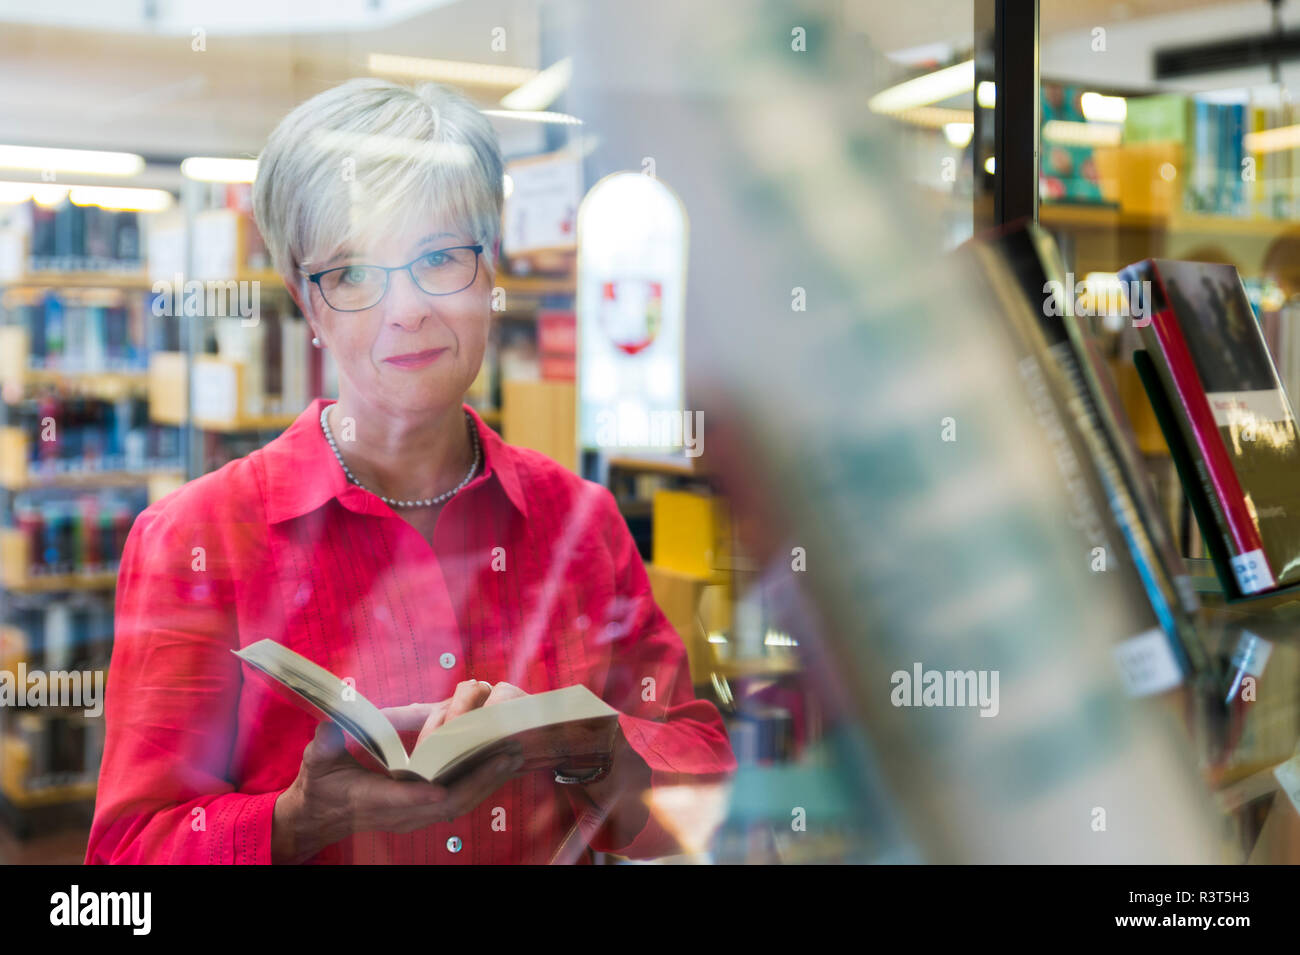 Seniorin mit Buch und Kamerablick hinter einer spiegelnden Glasscheibe.Grevenbroich, Nordrhein-Westfalen, Deutschland Stock Photo